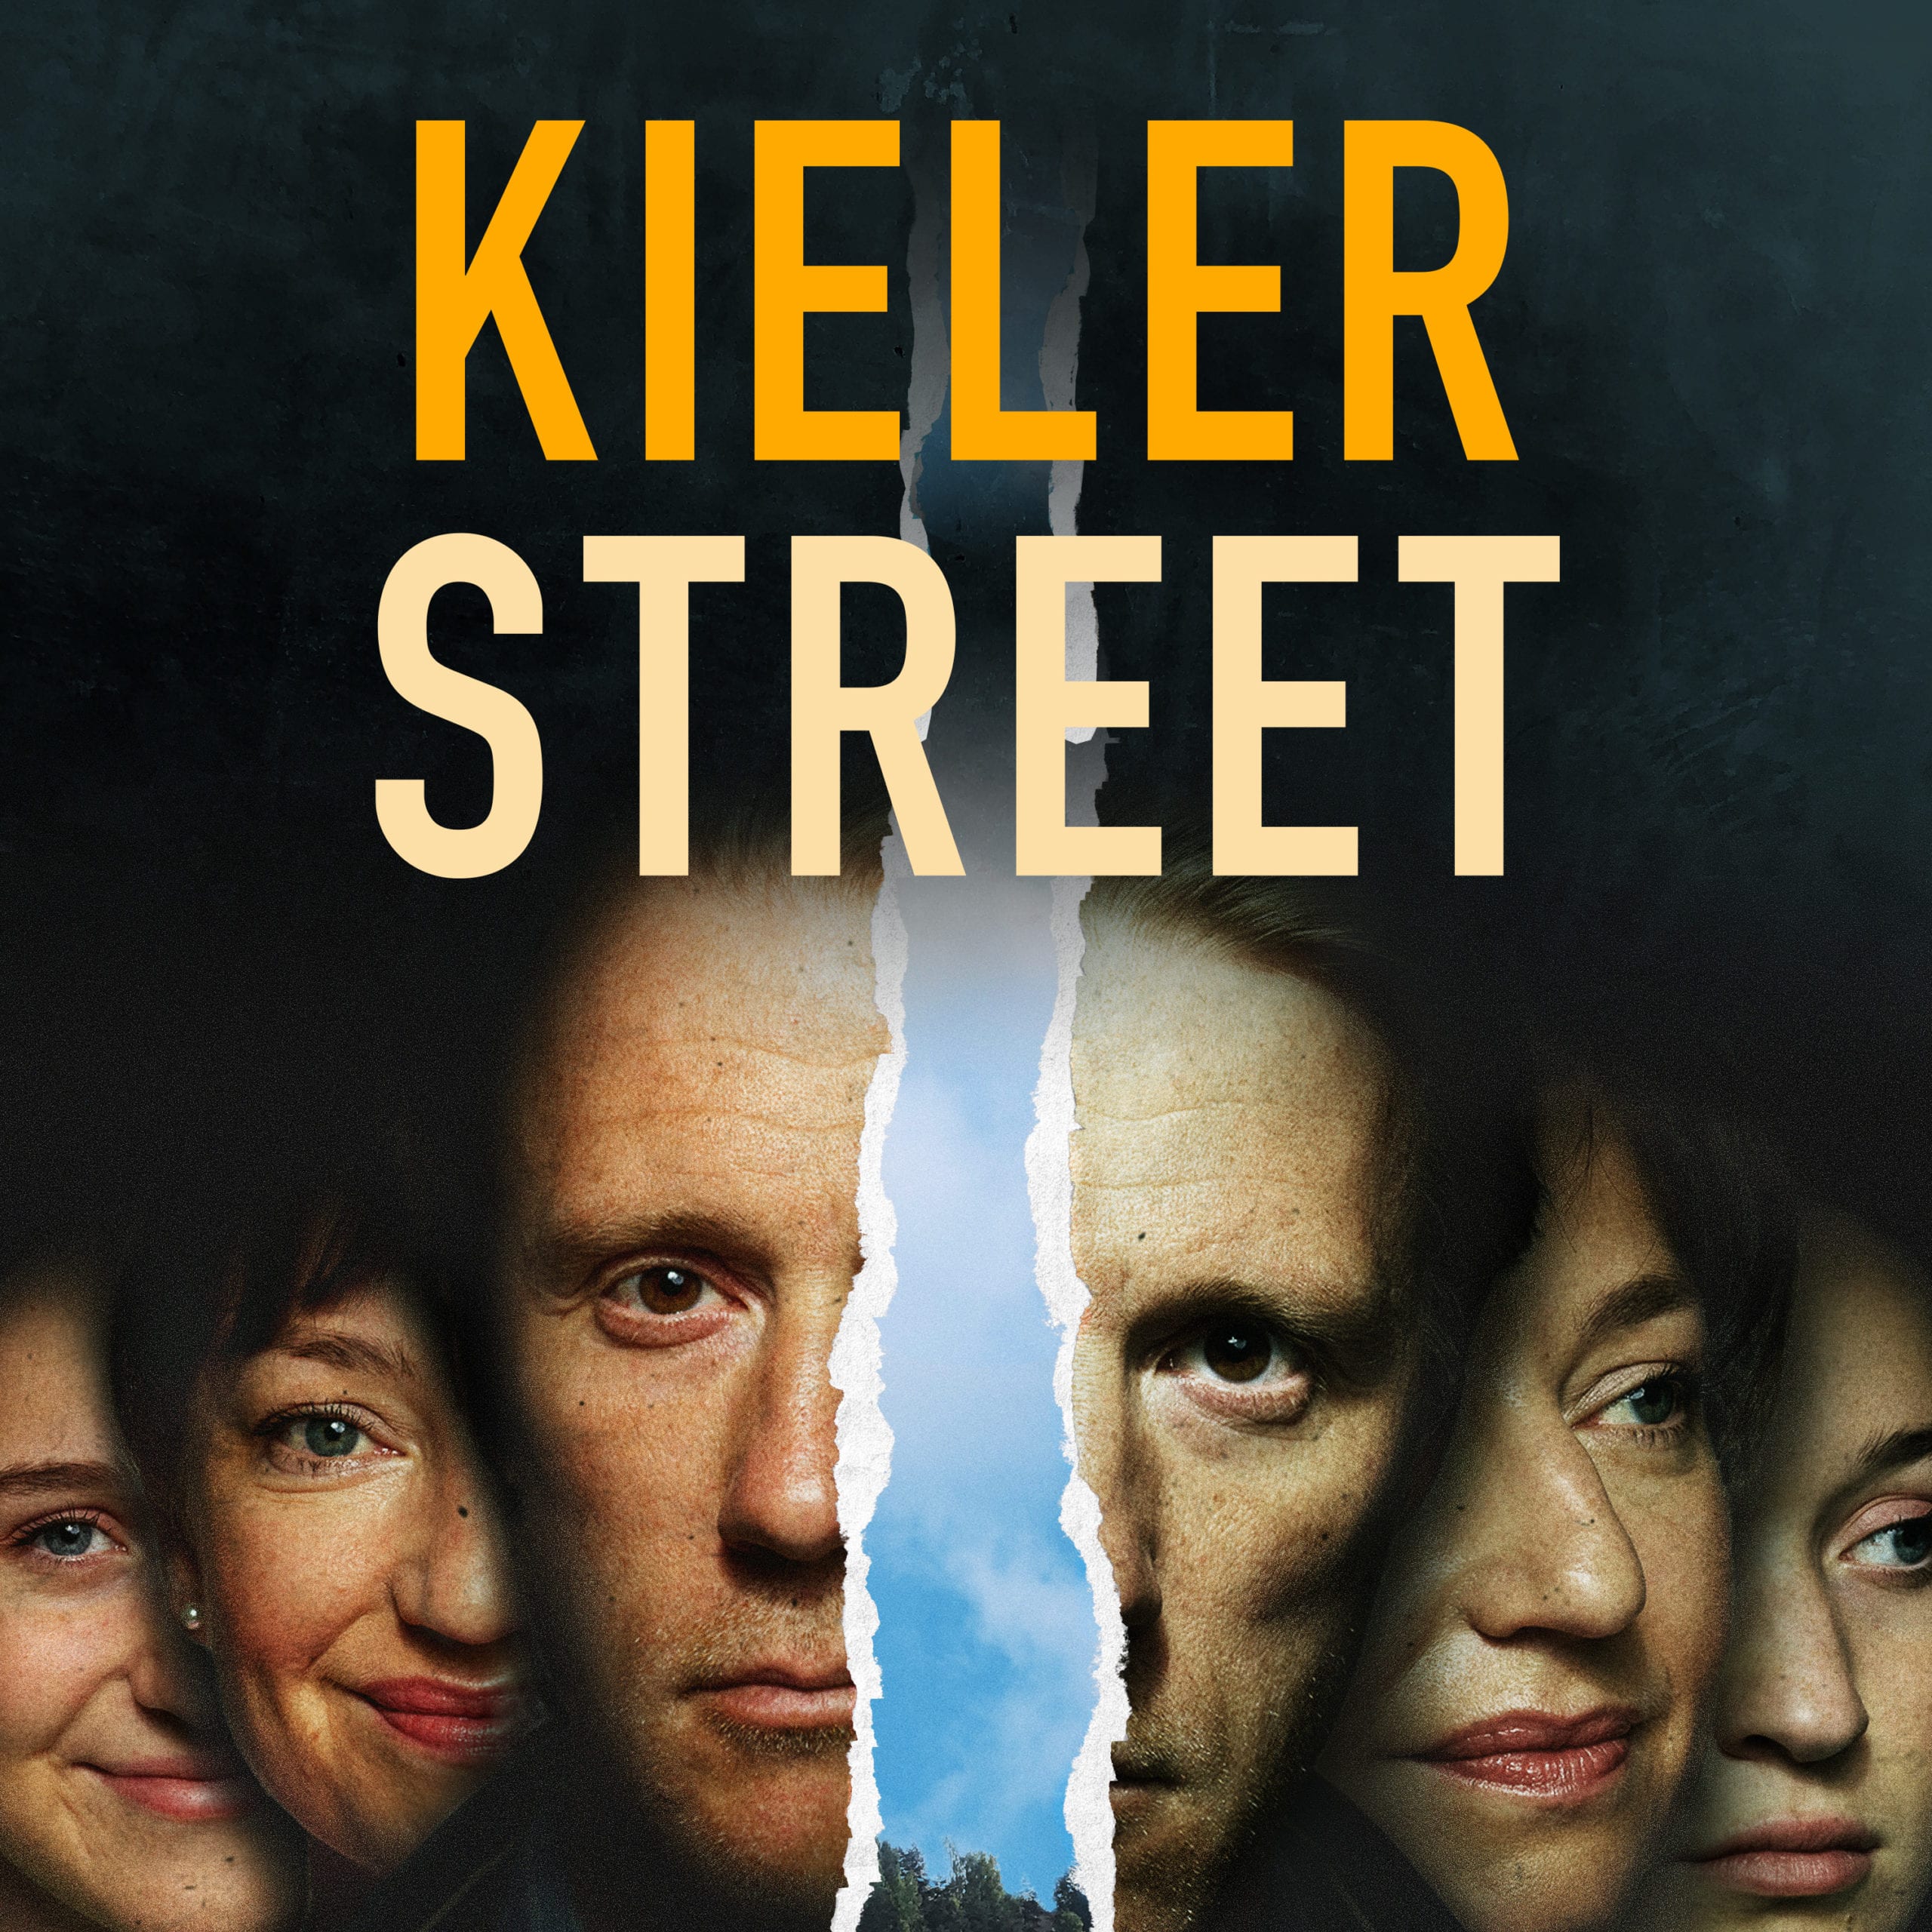 kieler street 1x1 3000x3000 A M scaled